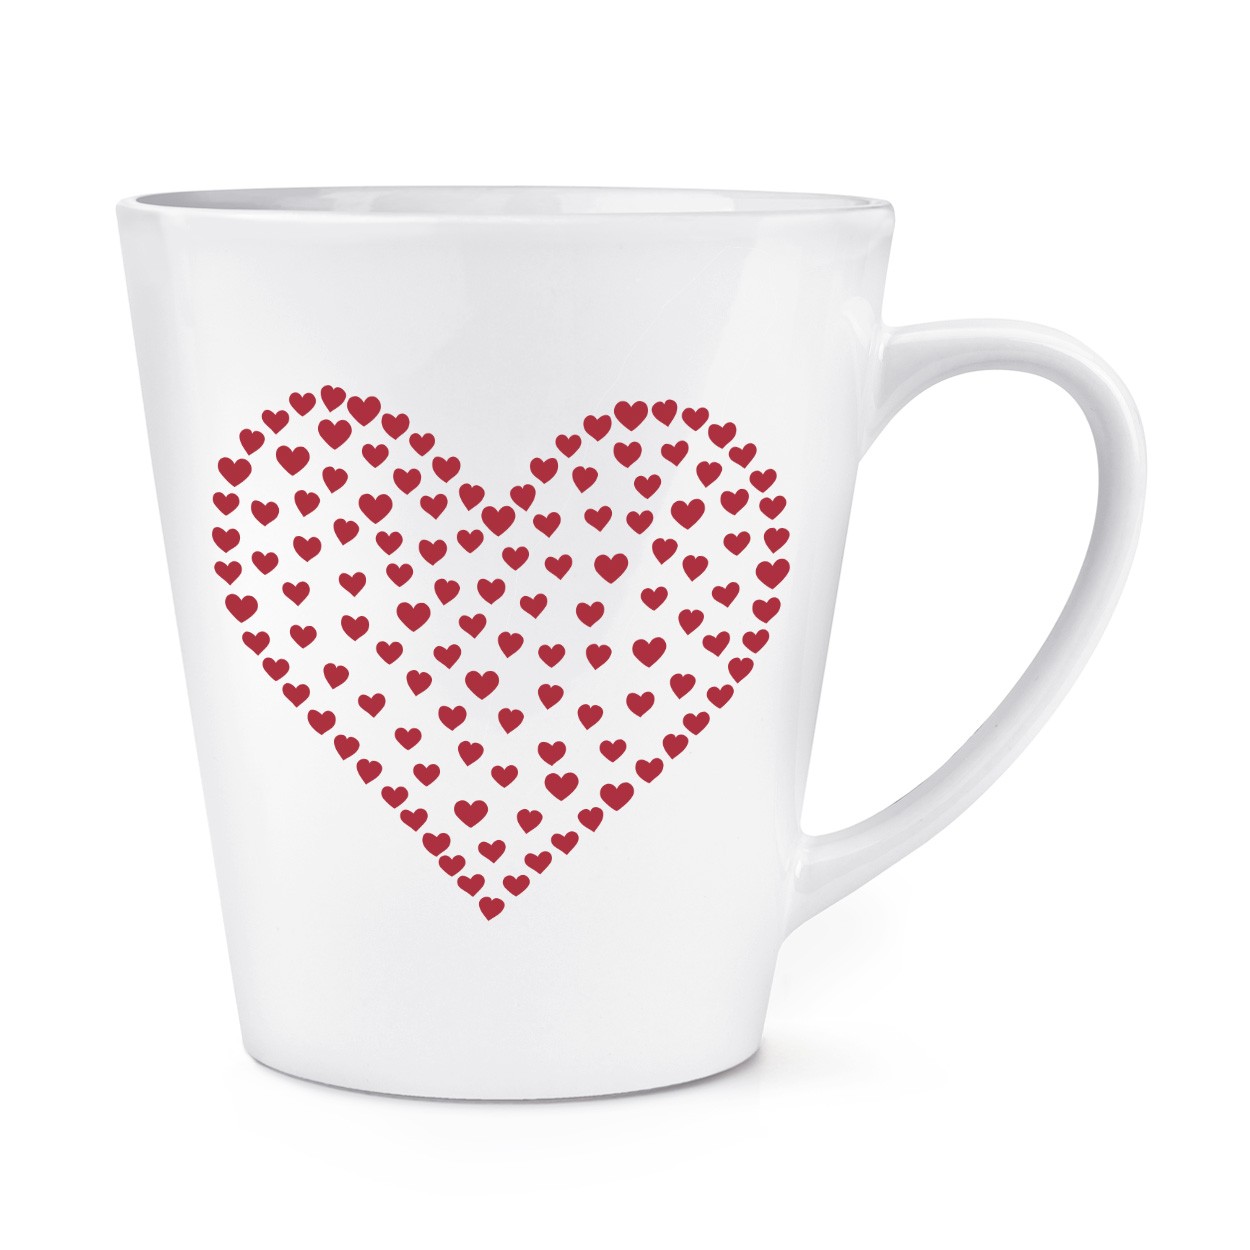 Heart Of Hearts 12oz Latte Mug Cup